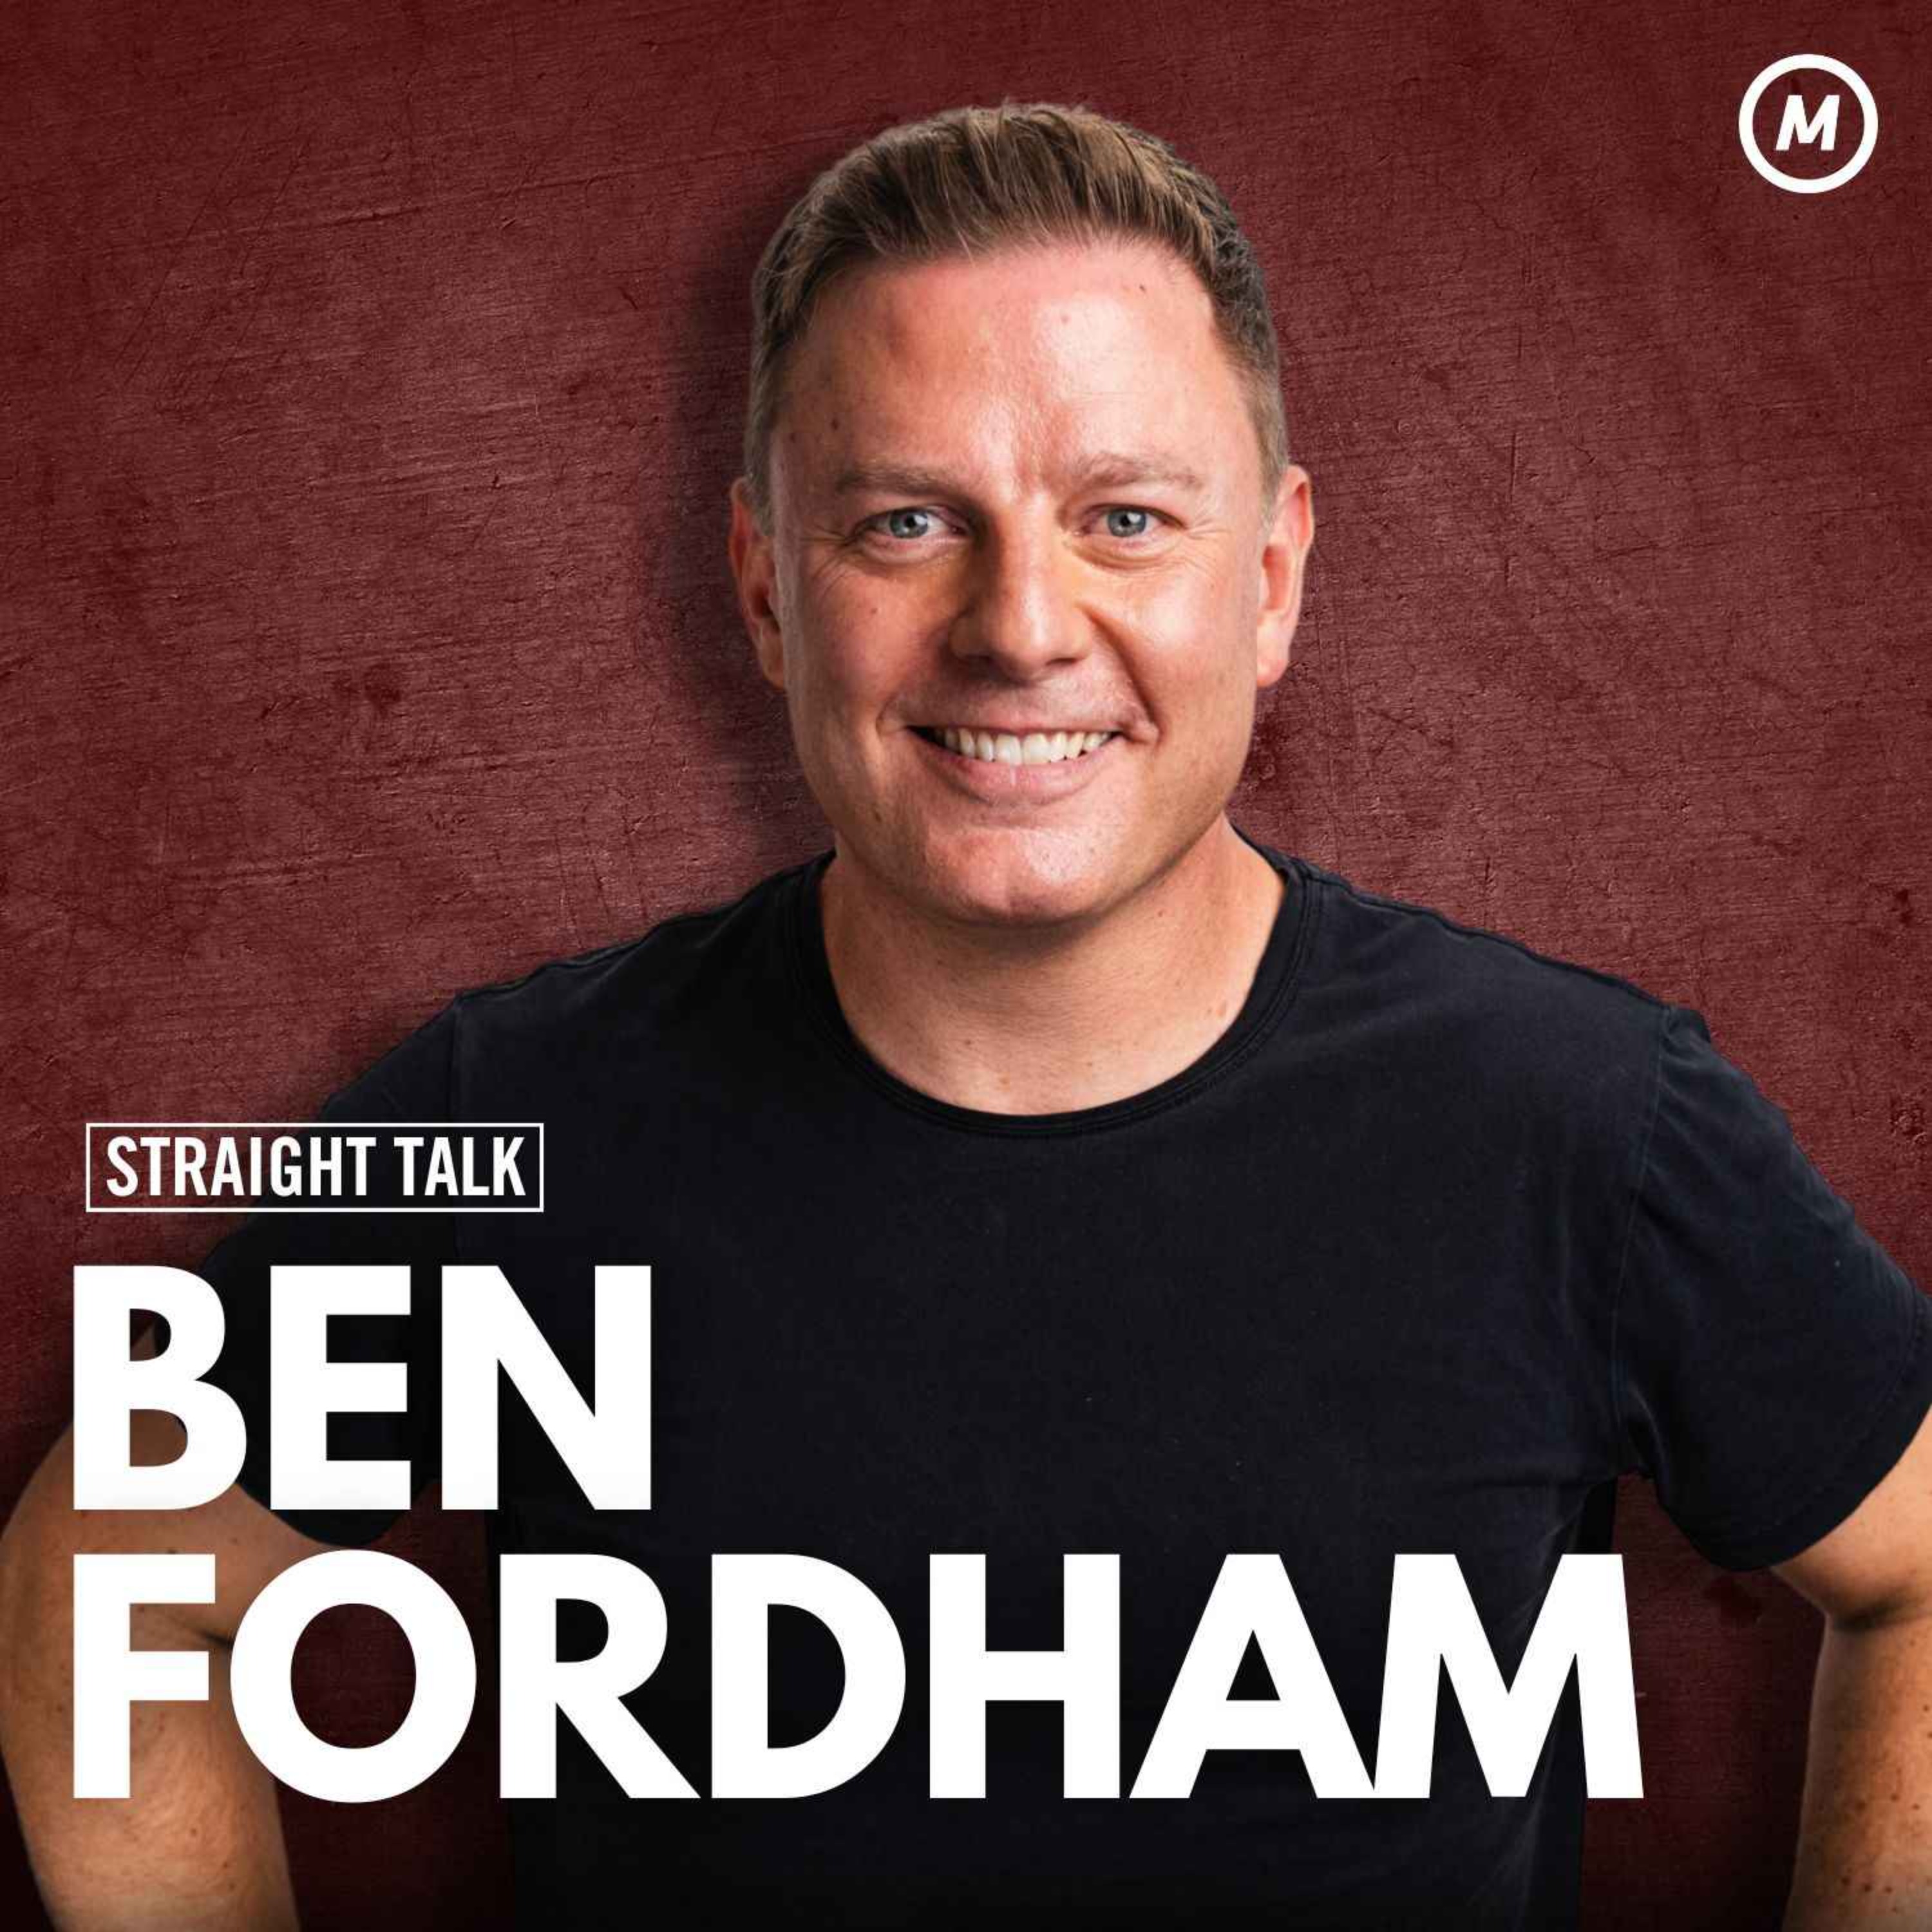 #129 Ben Fordham: A candid conversation with Australia’s beloved radio host